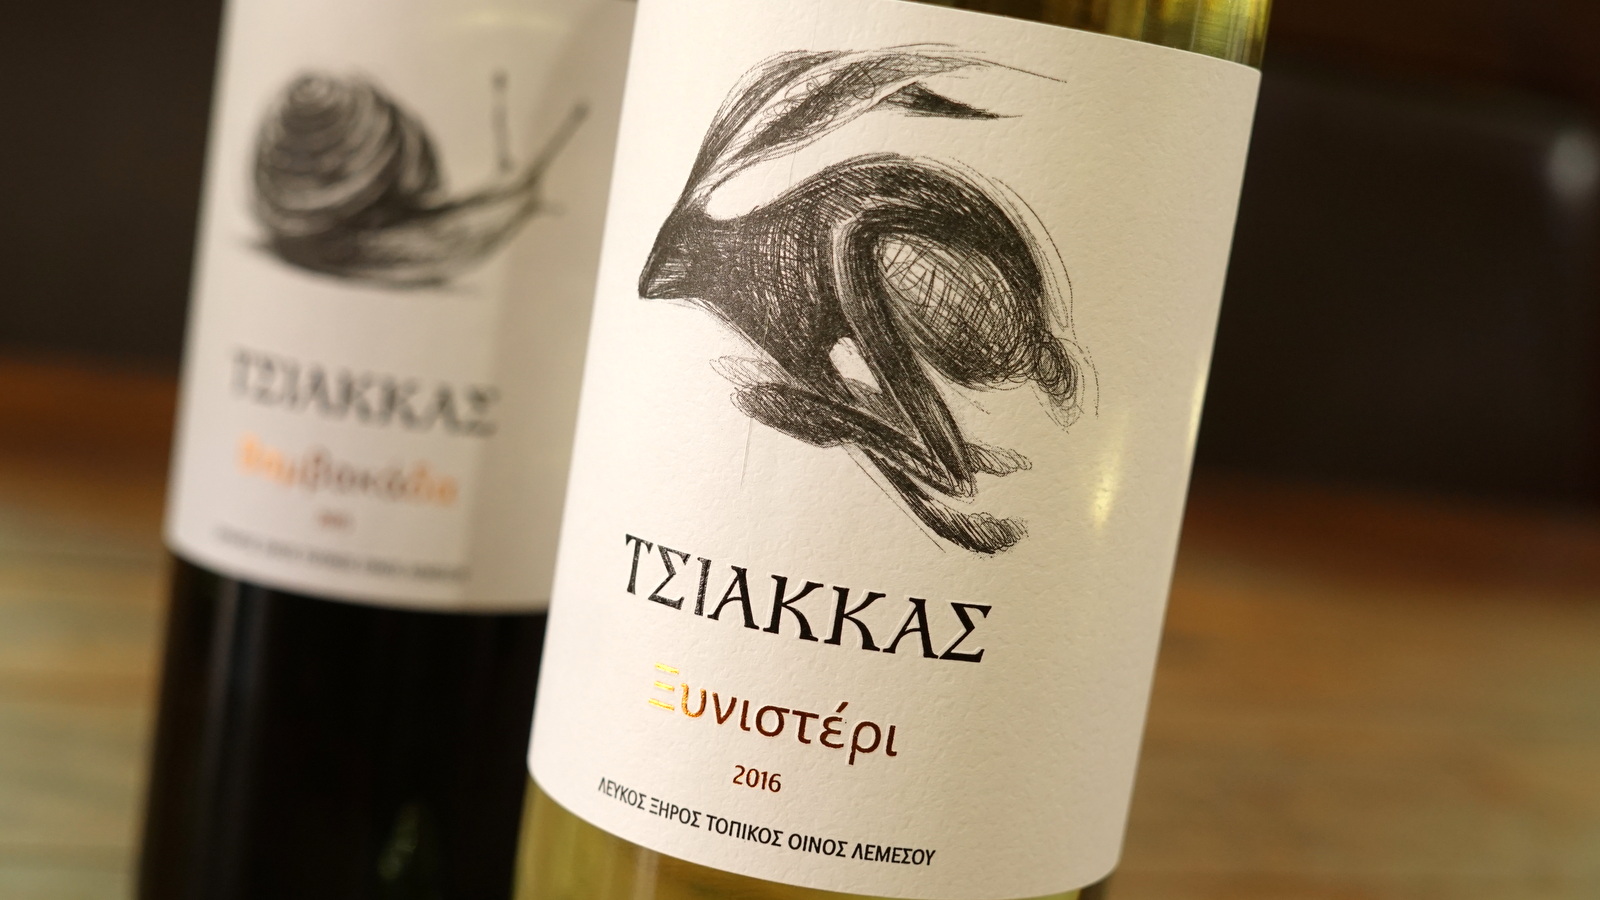 Tsiakkas Winery